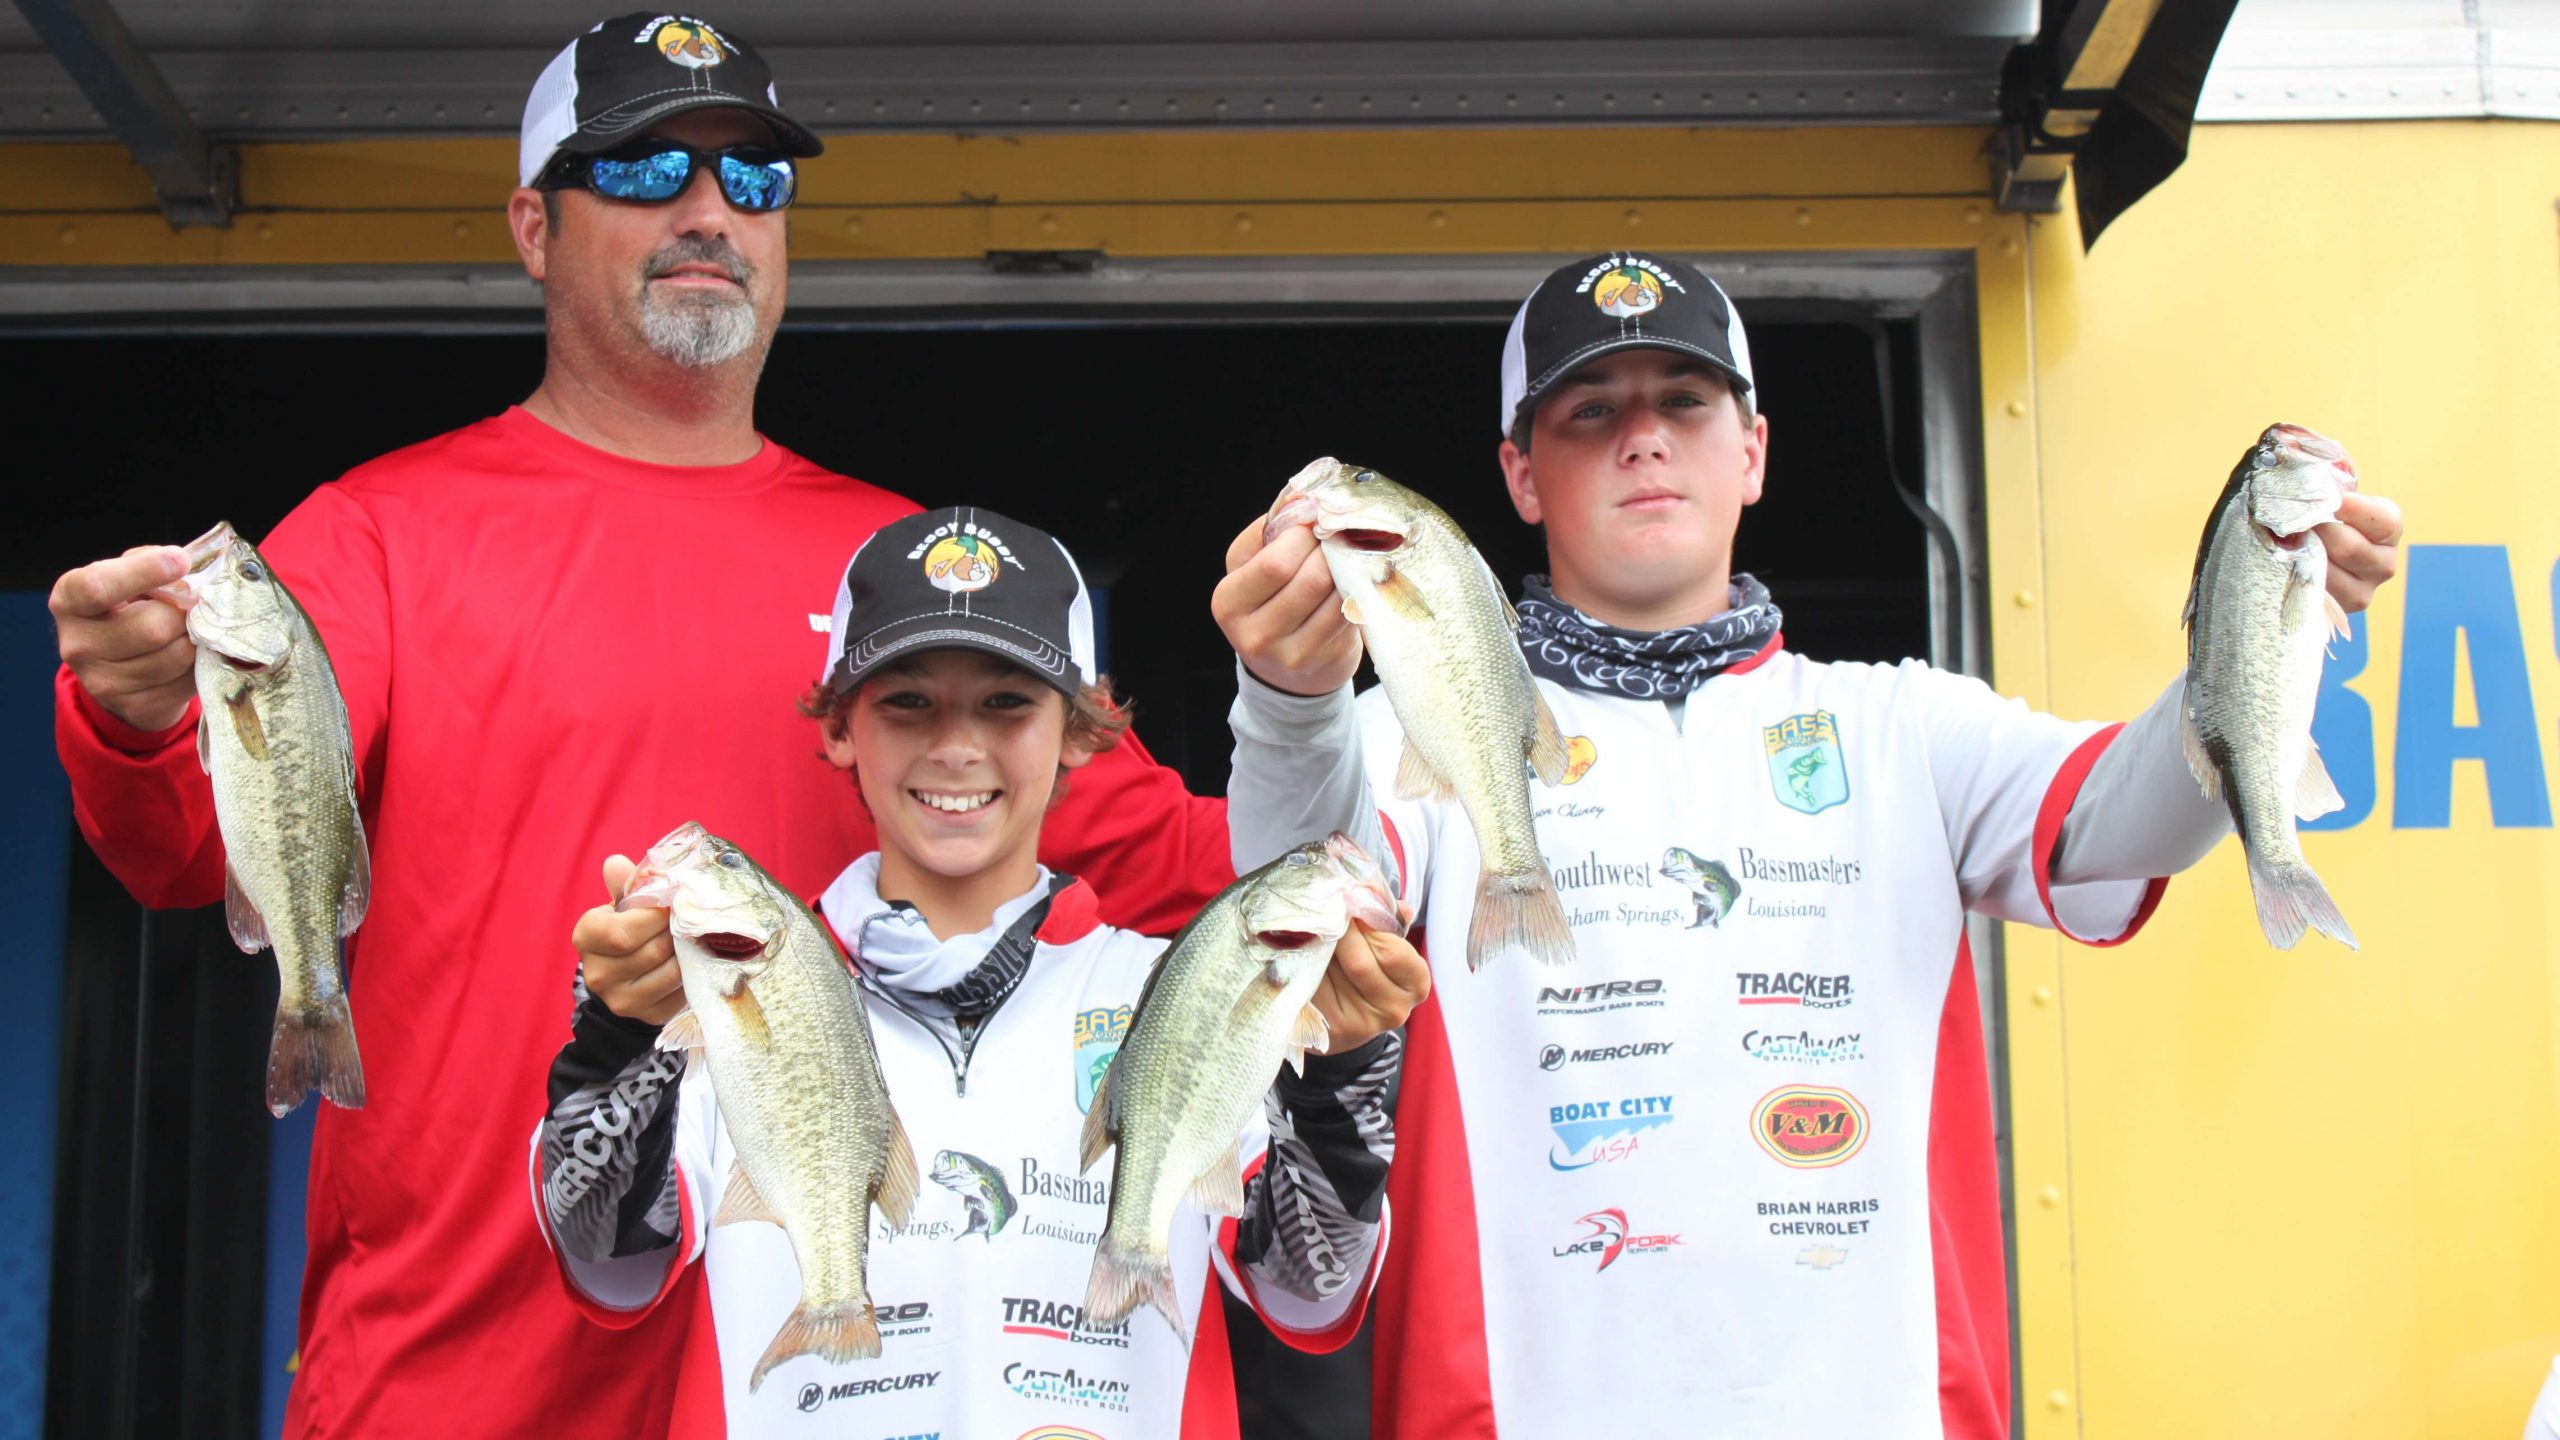 Team Louisianaâs Jackson Landry and Hanson Chaney are in a solid fourth place with five fish totaling 4-11.